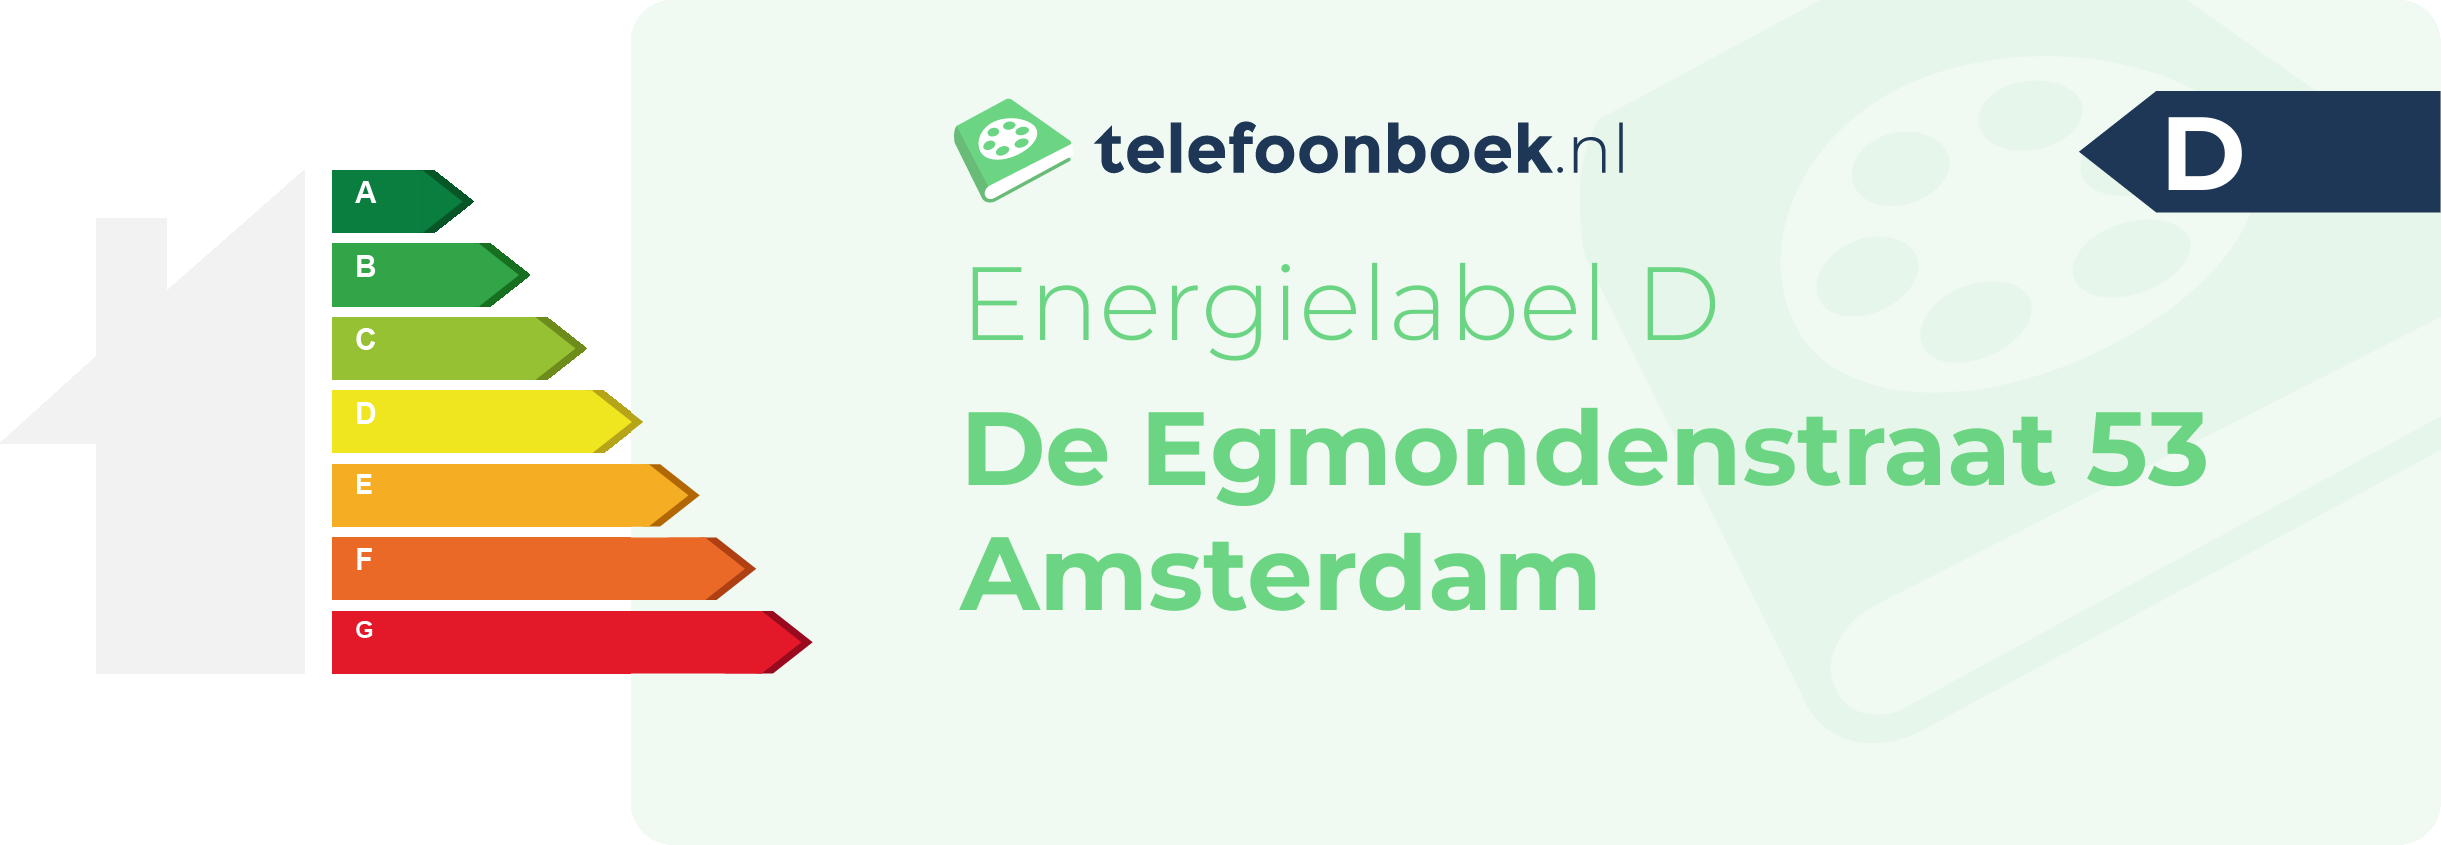 Energielabel De Egmondenstraat 53 Amsterdam